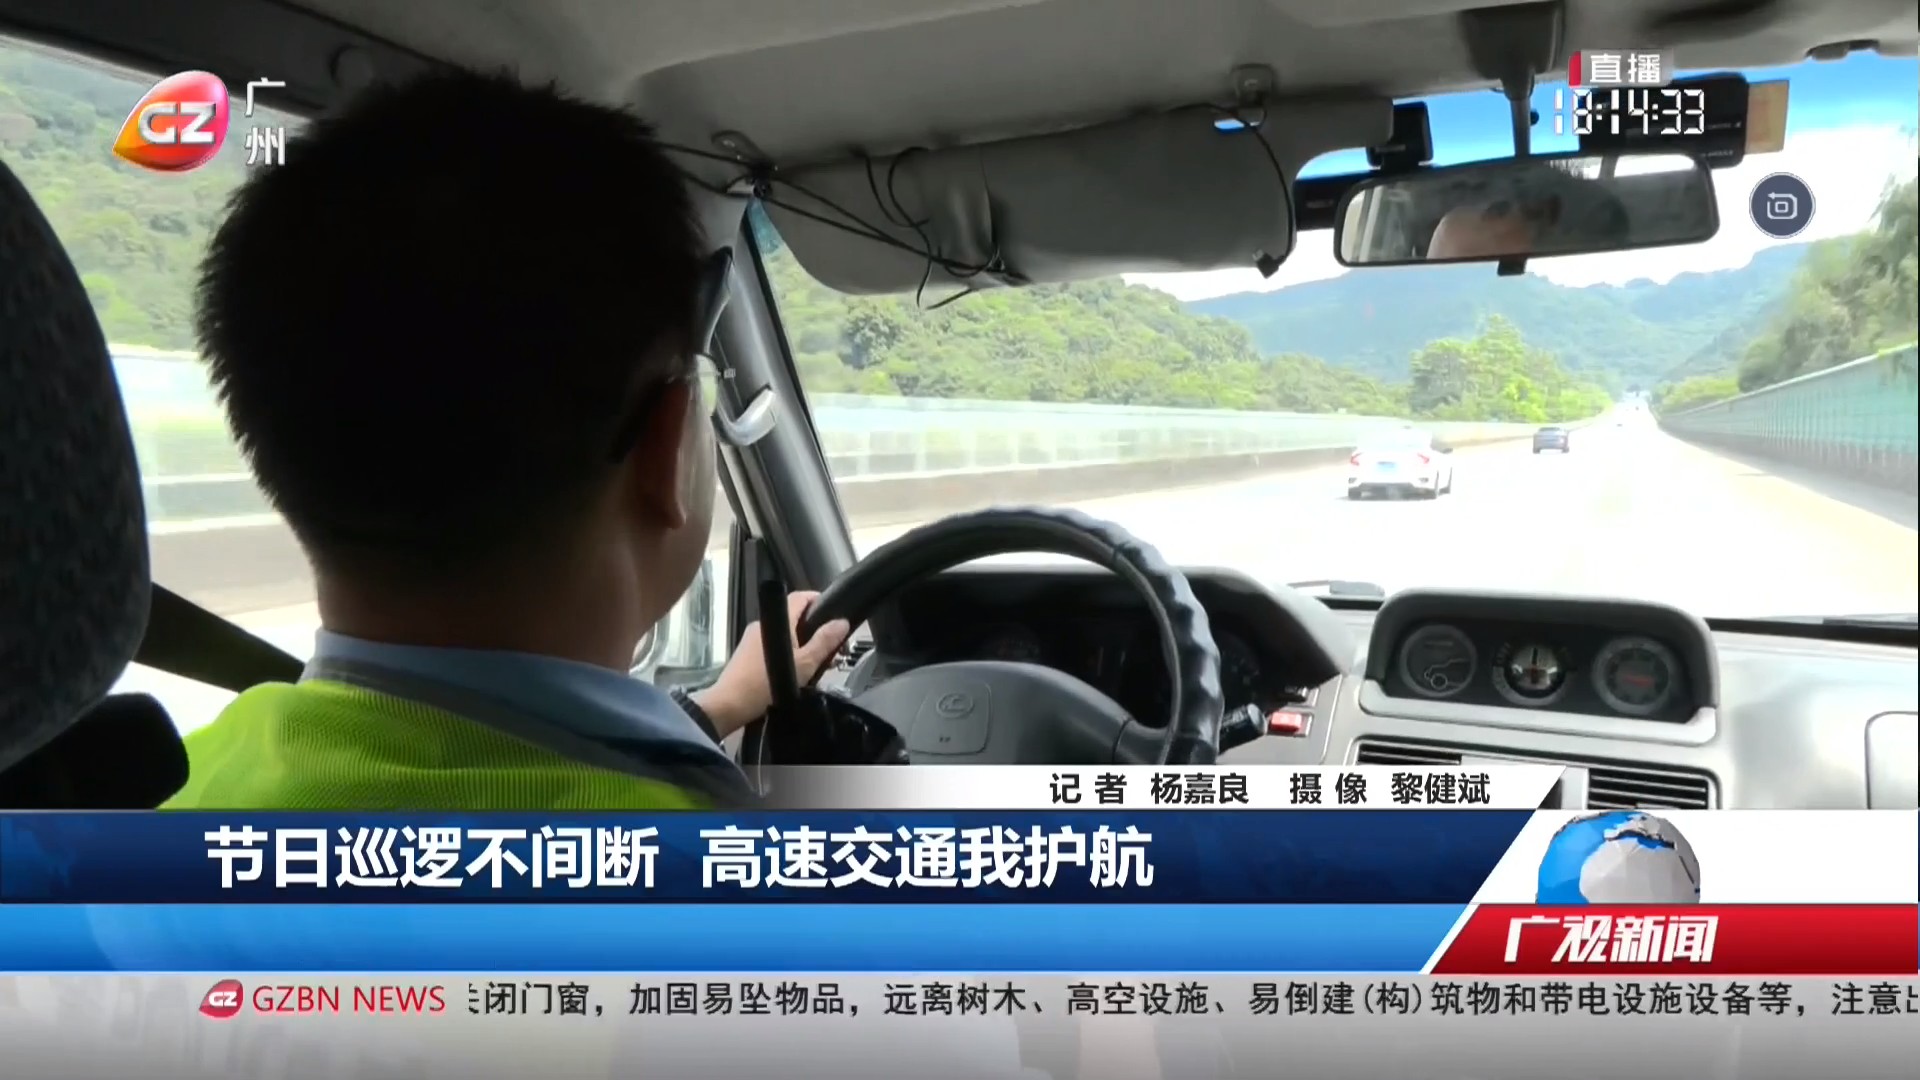 广州台综合频道 广视新闻 节日巡逻不间断 高速交通我护航